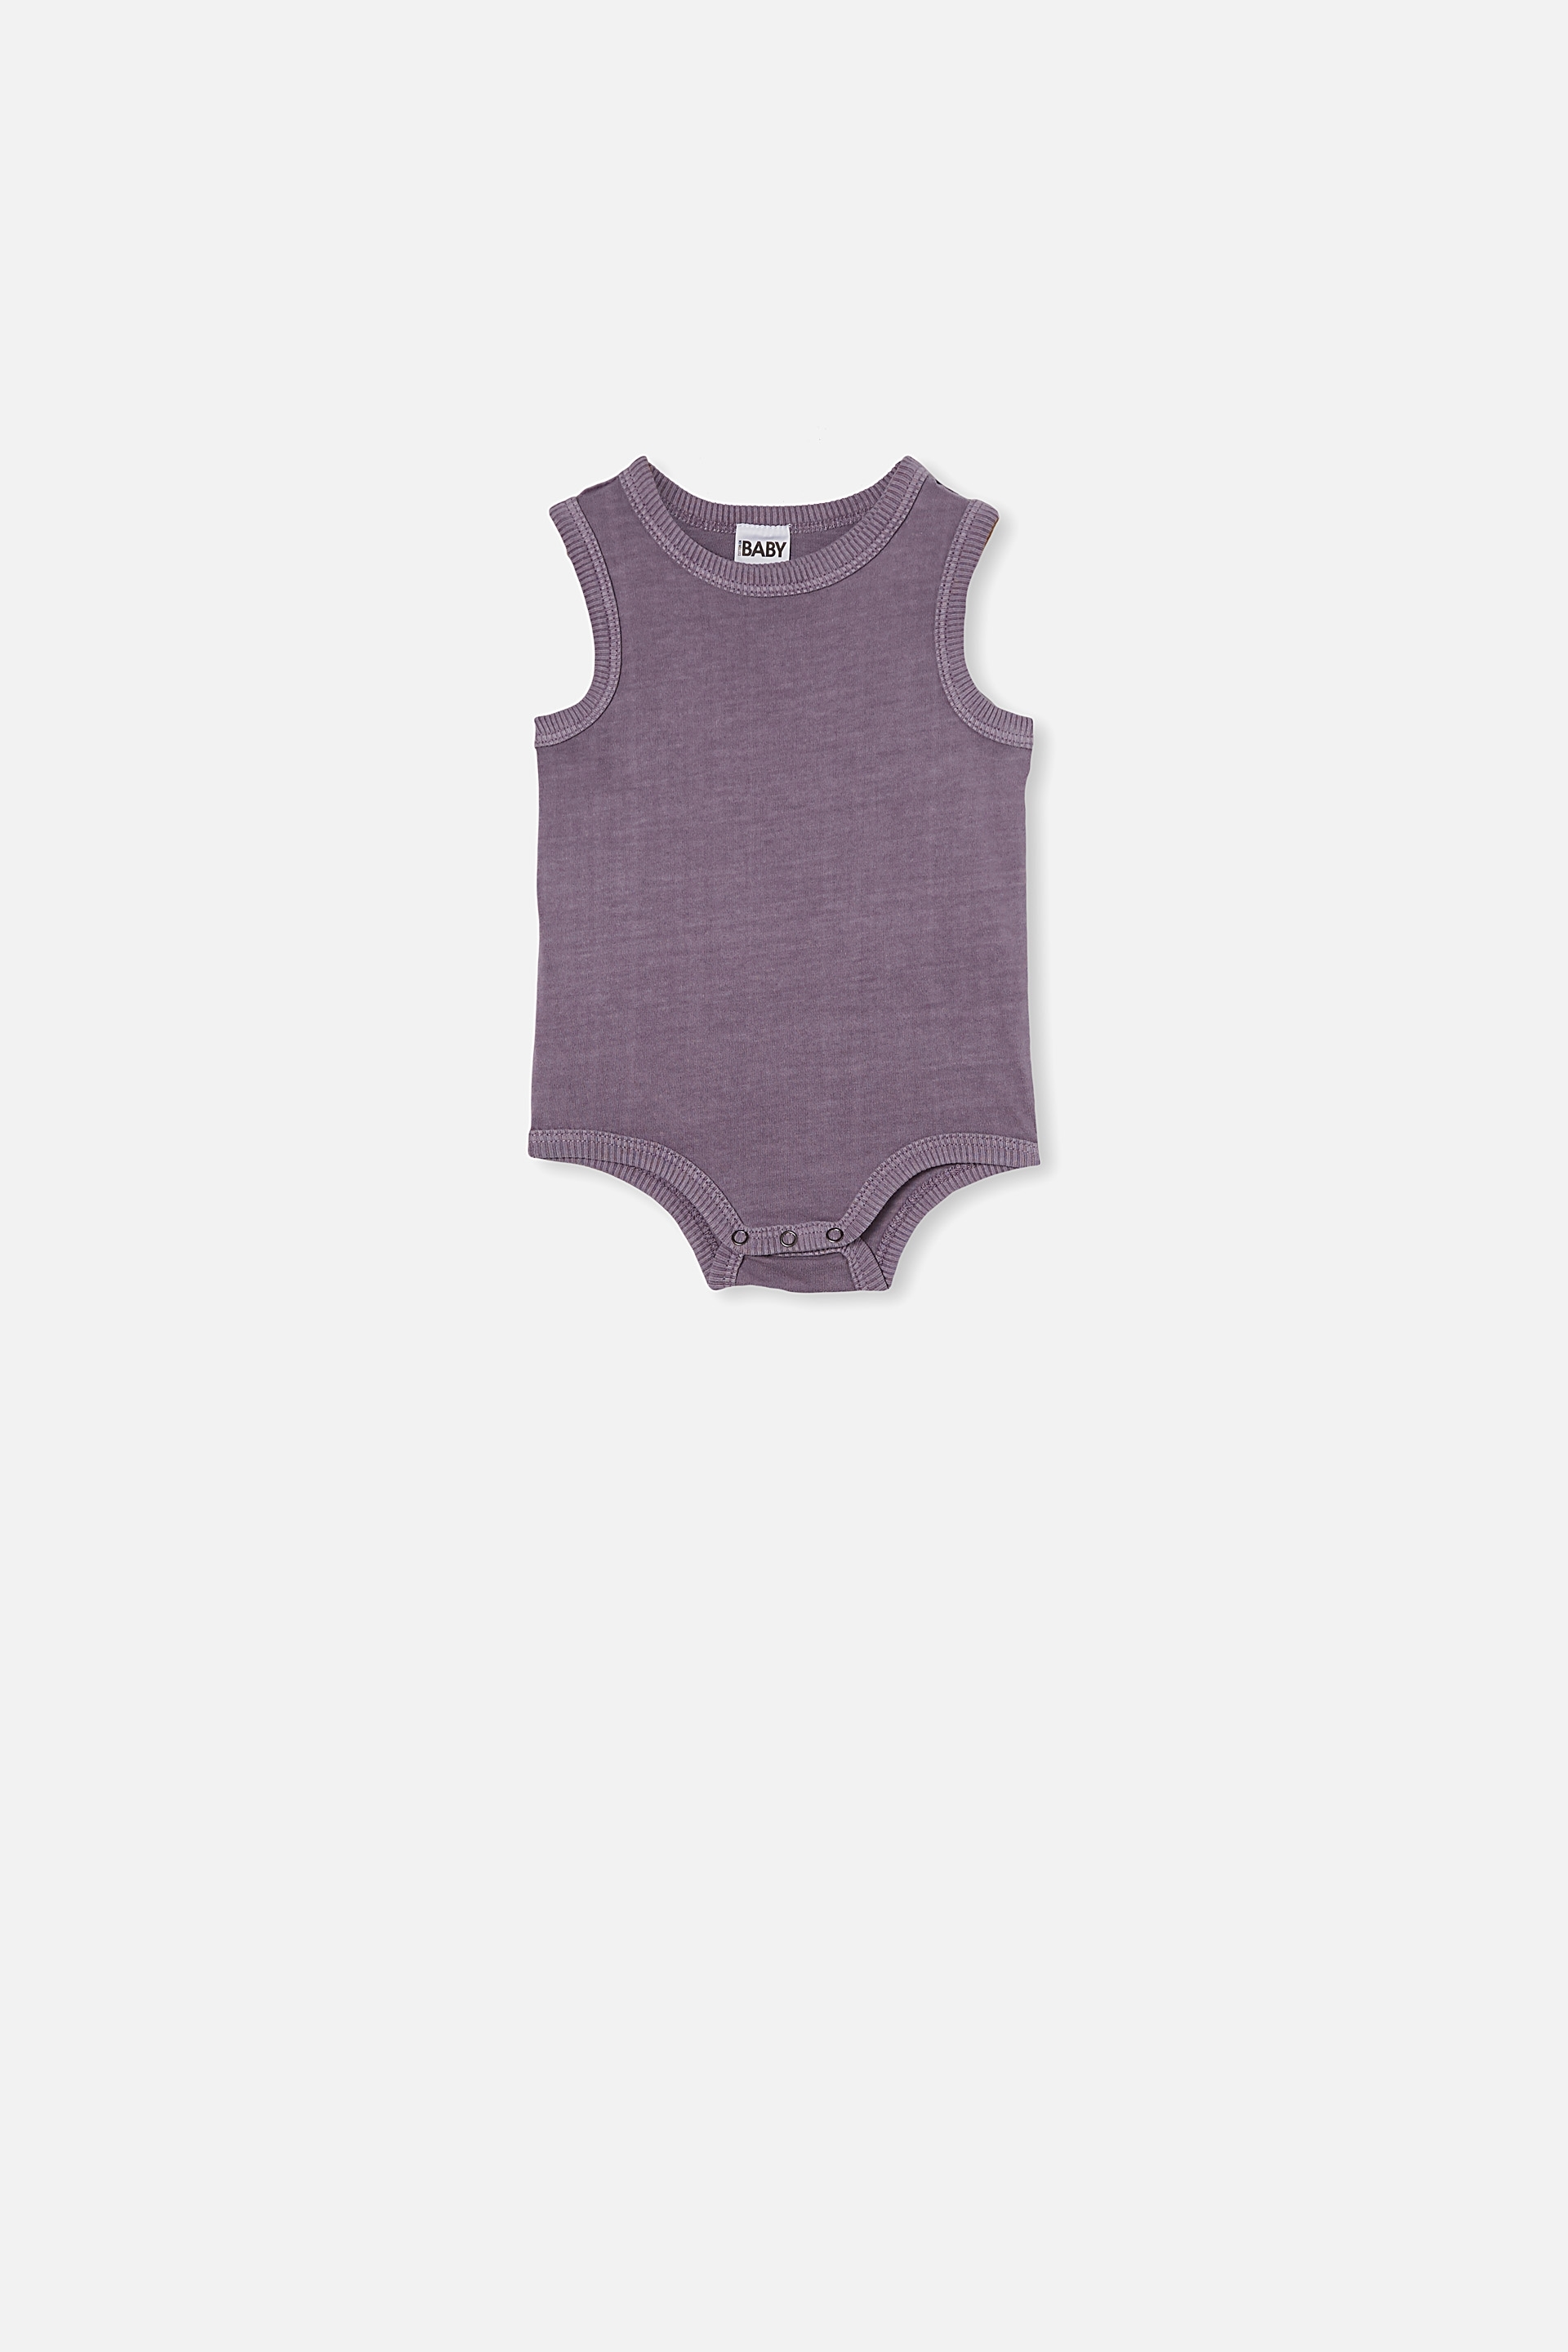 Cotton On Kids - Loki Singlet Bubbysuit - Dusk purple wash